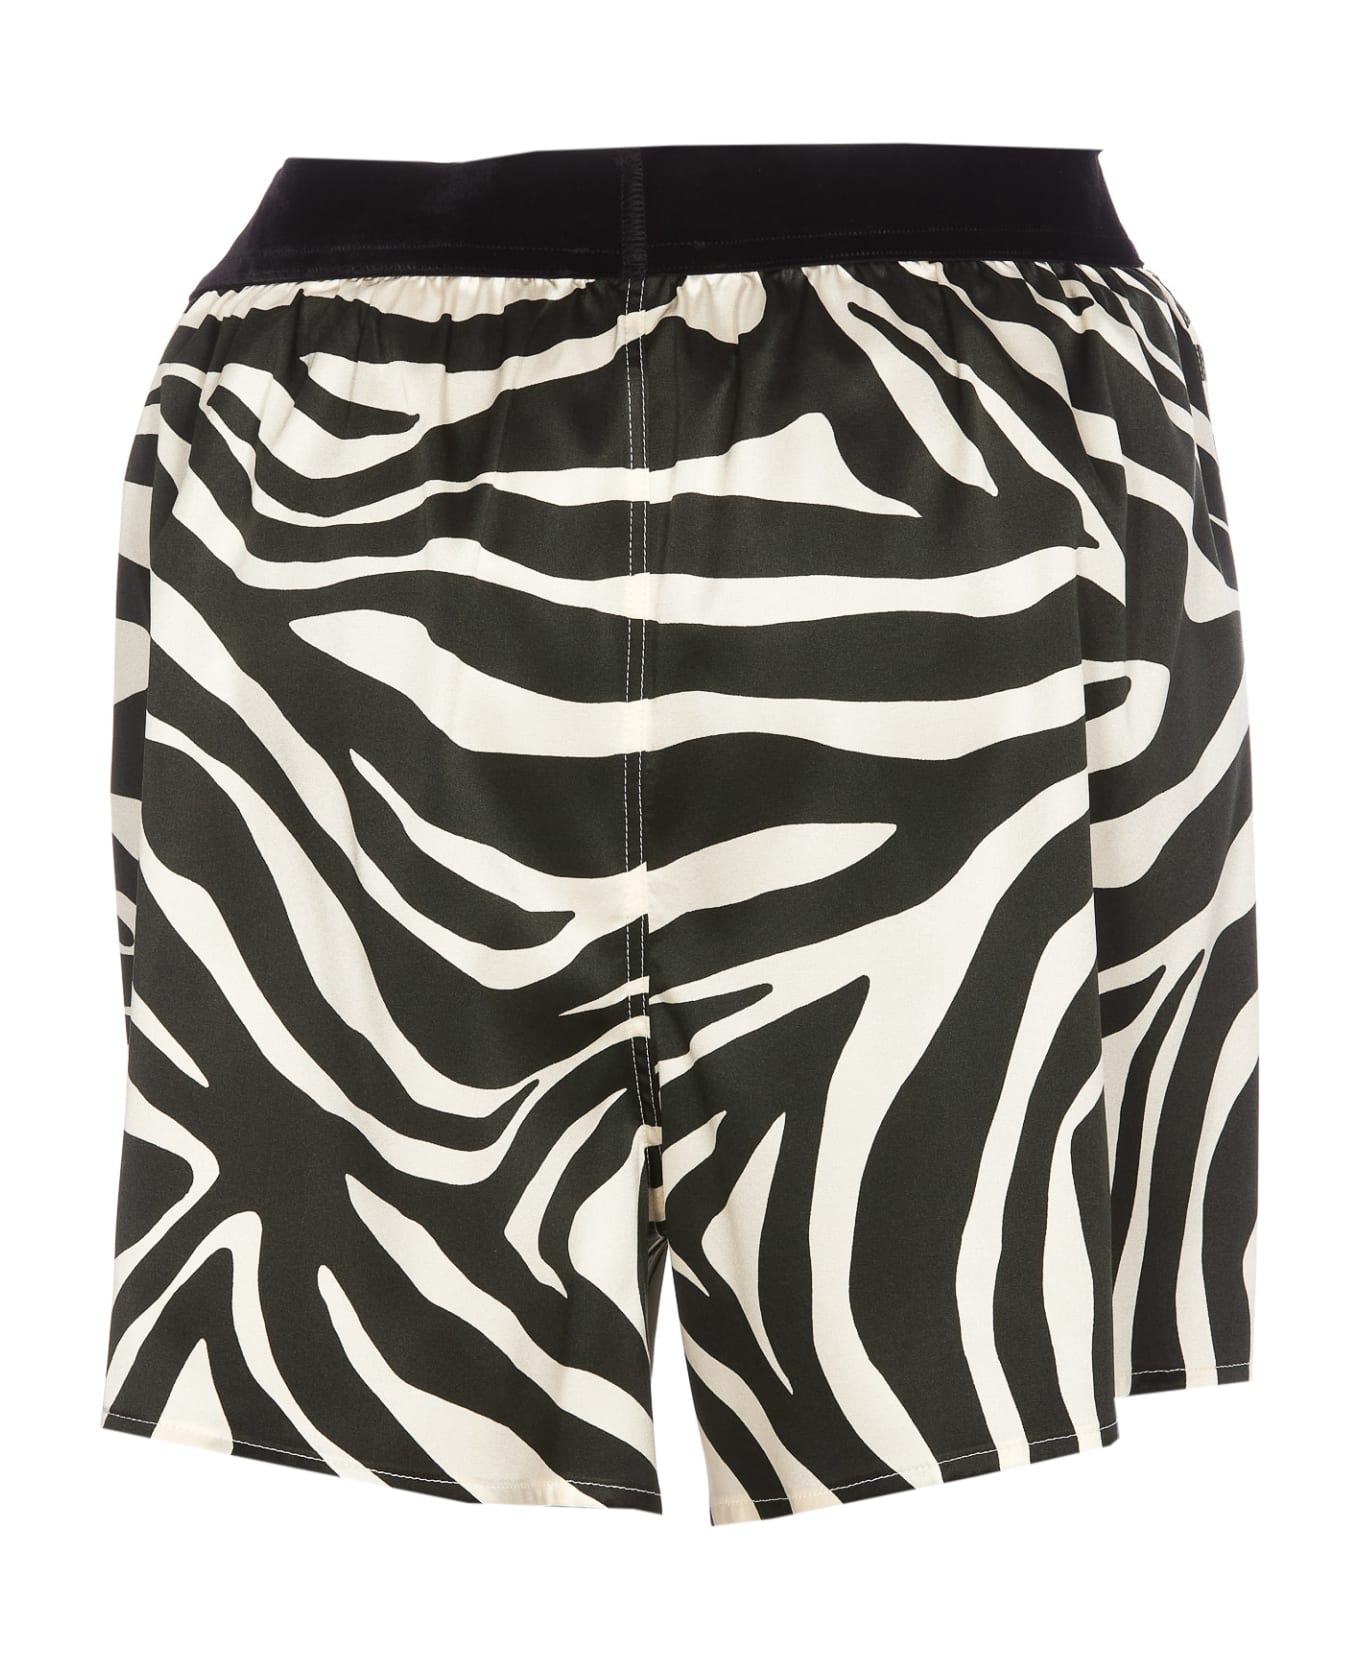 Tom Ford Zebra Print Shorts - Black ショートパンツ